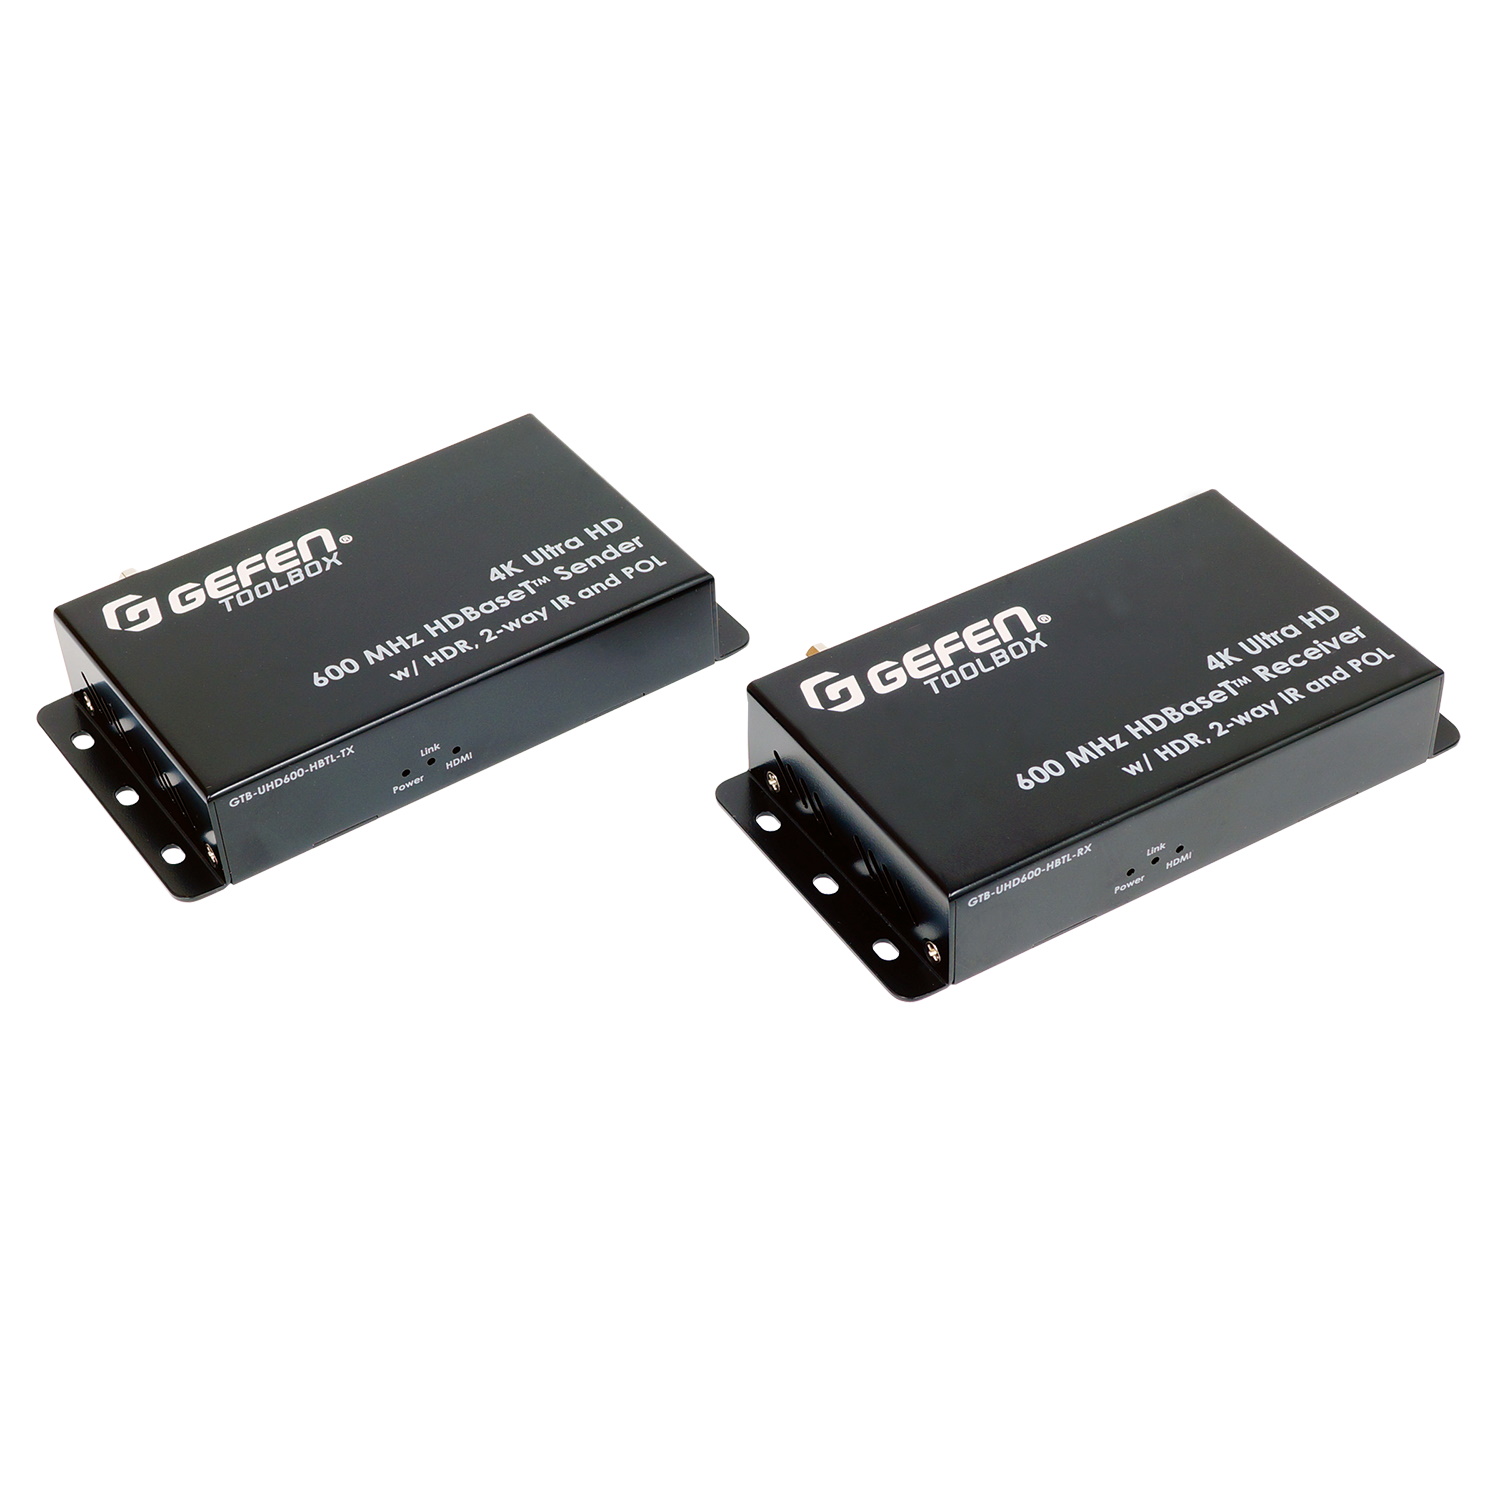 HDMI коммутаторы, разветвители, повторители Gefen GTB-UHD600-HBTL hdmi коммутаторы разветвители повторители gefen ext uhd600 1sc